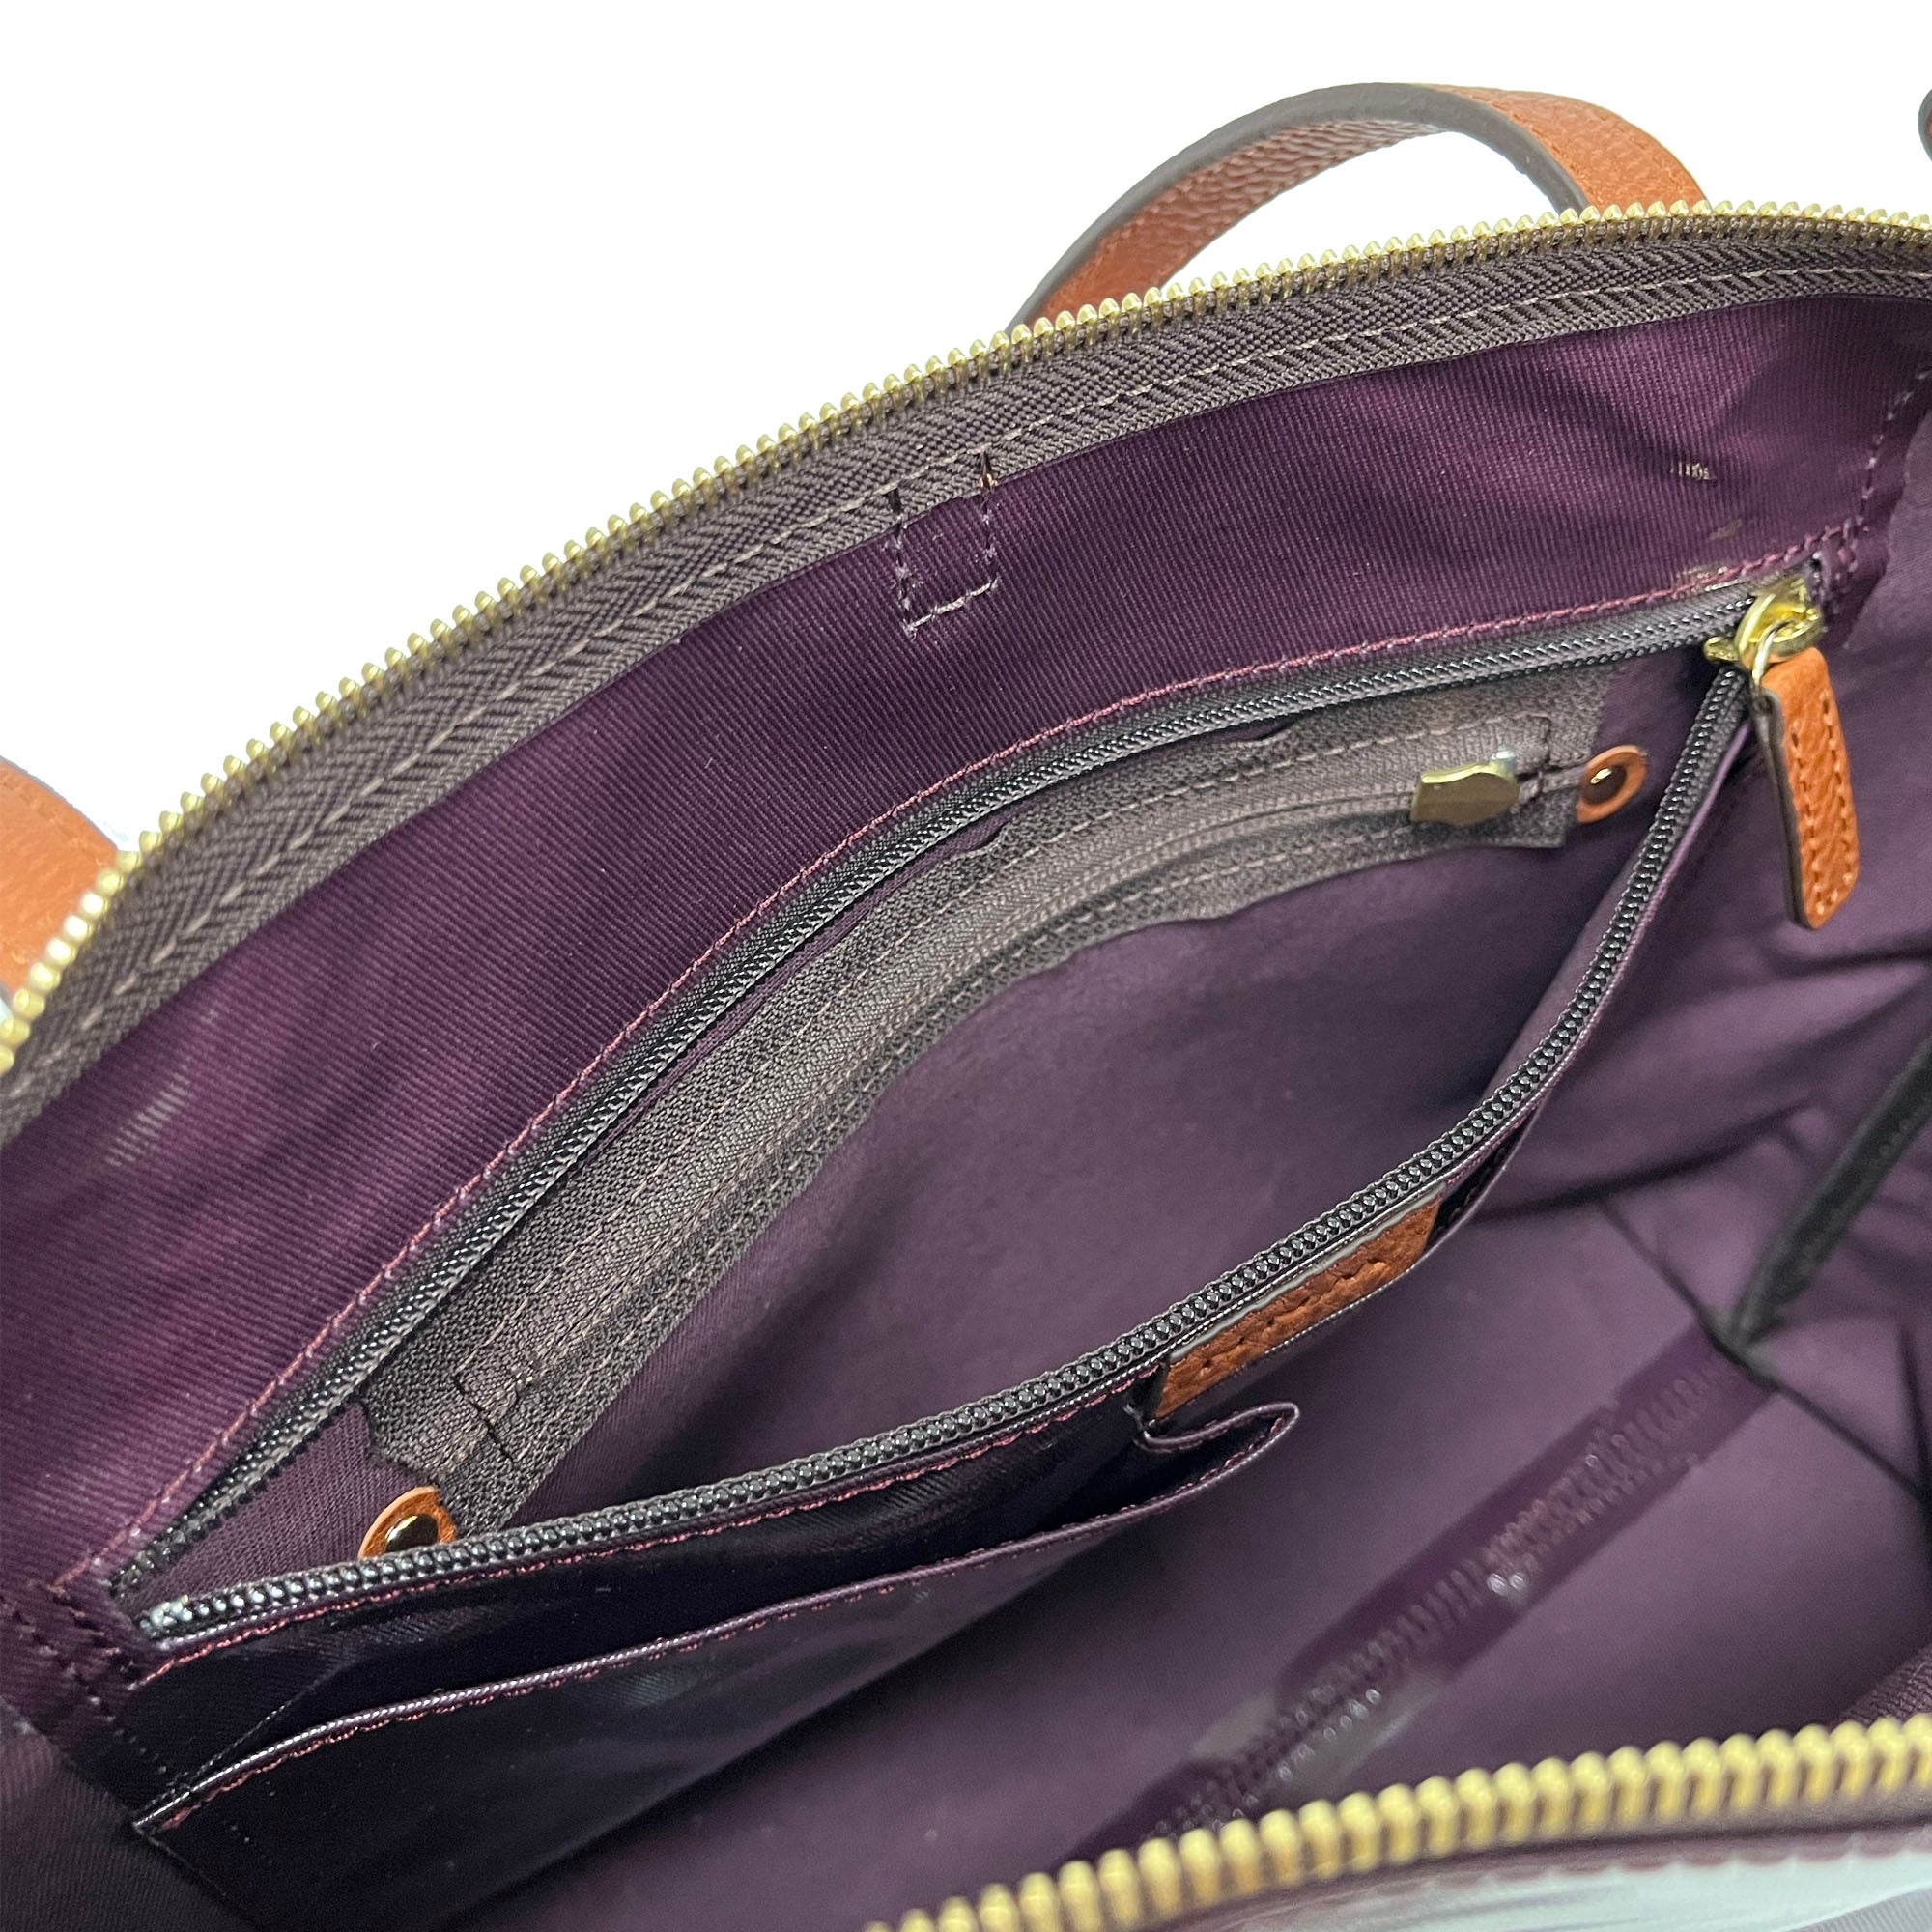 LIFE |  Waterproof Tote Bag (Violet Purple)